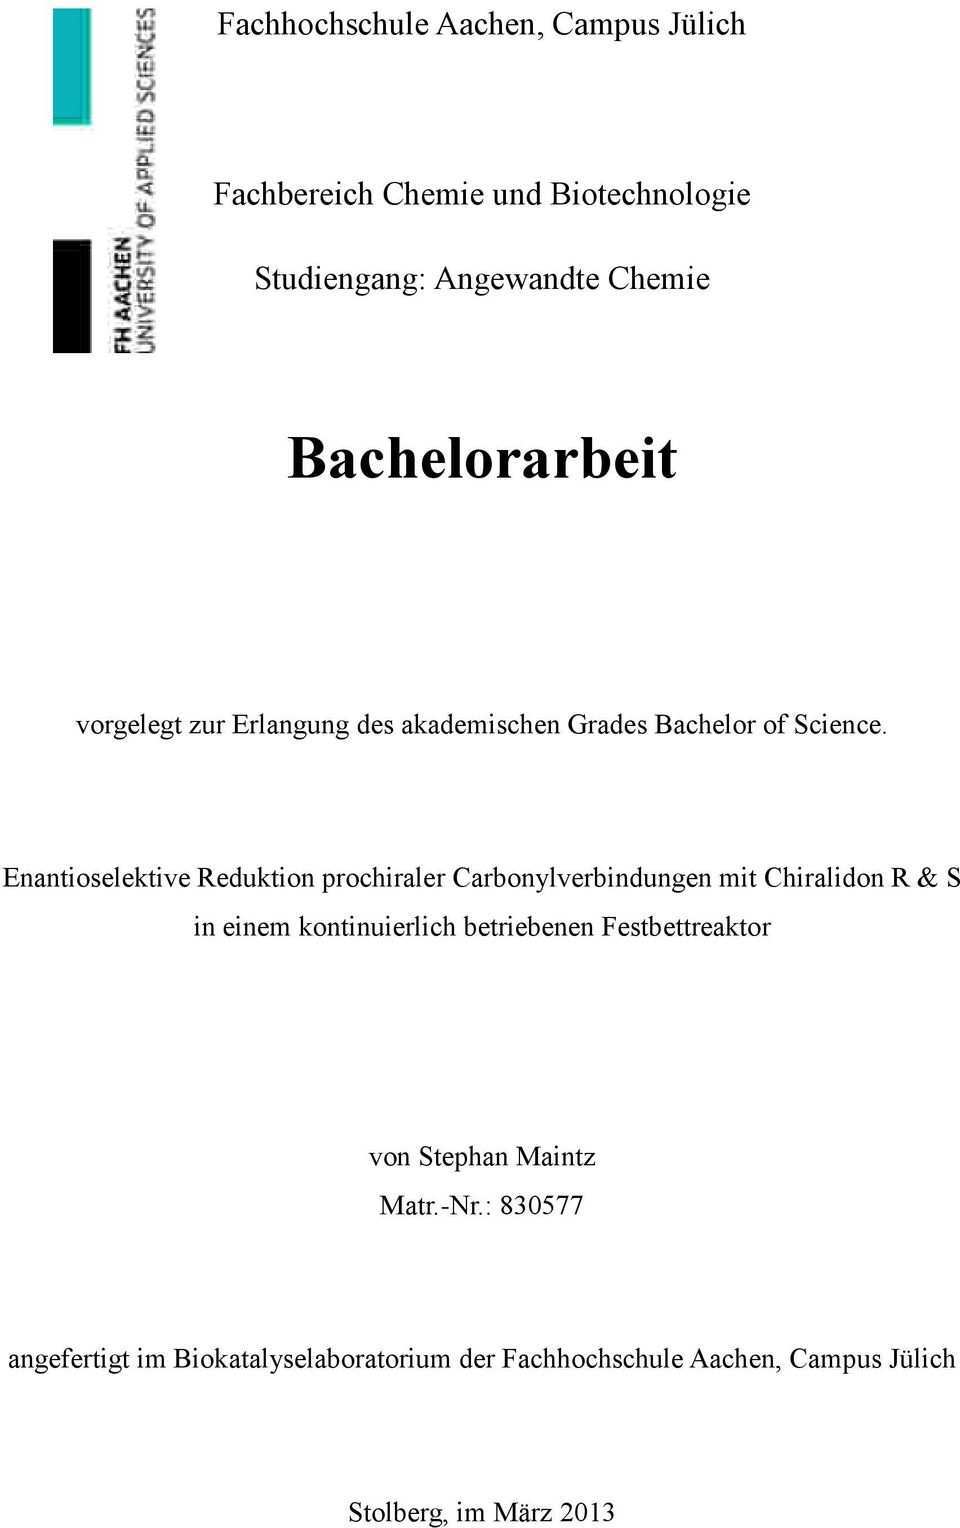 Fachhochschule Aachen Campus Julich Fachbereich Chemie Und Biotechnologie Studiengang Angewandte Chemie Bachelorarbeit Pdf Kostenfreier Download